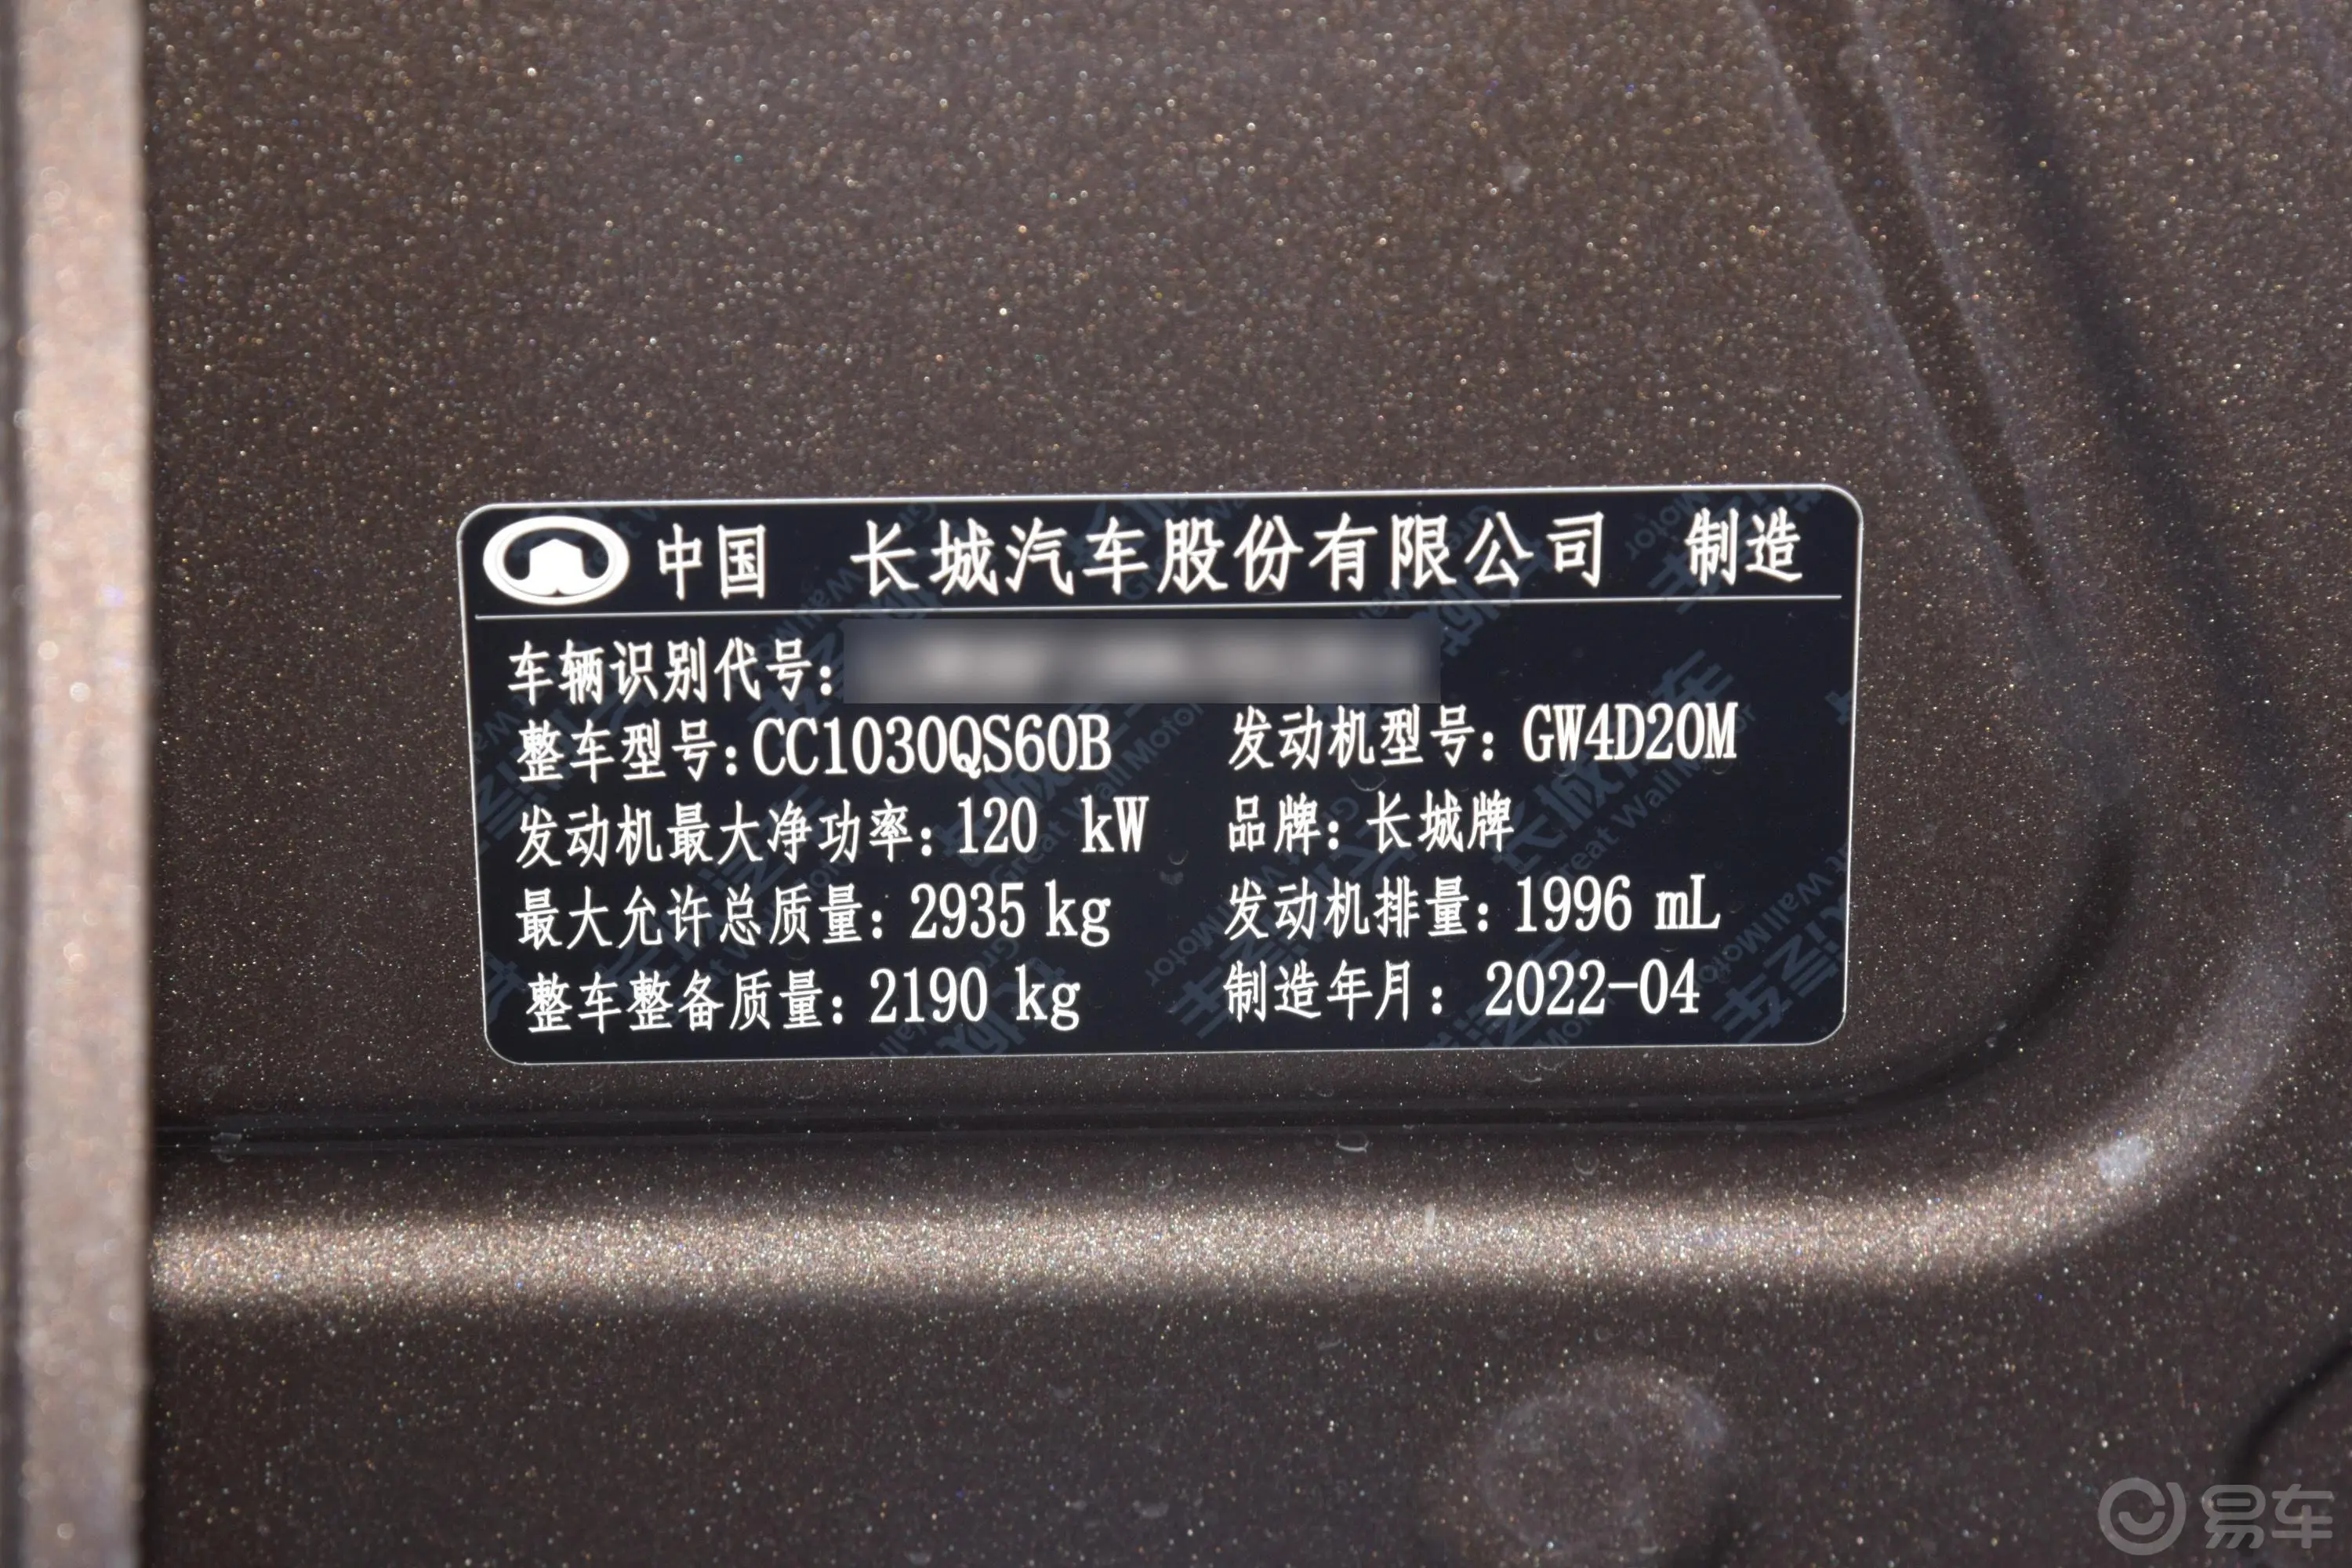 炮乘用版 2.0T 自动四驱小双茶王型 柴油车辆信息铭牌